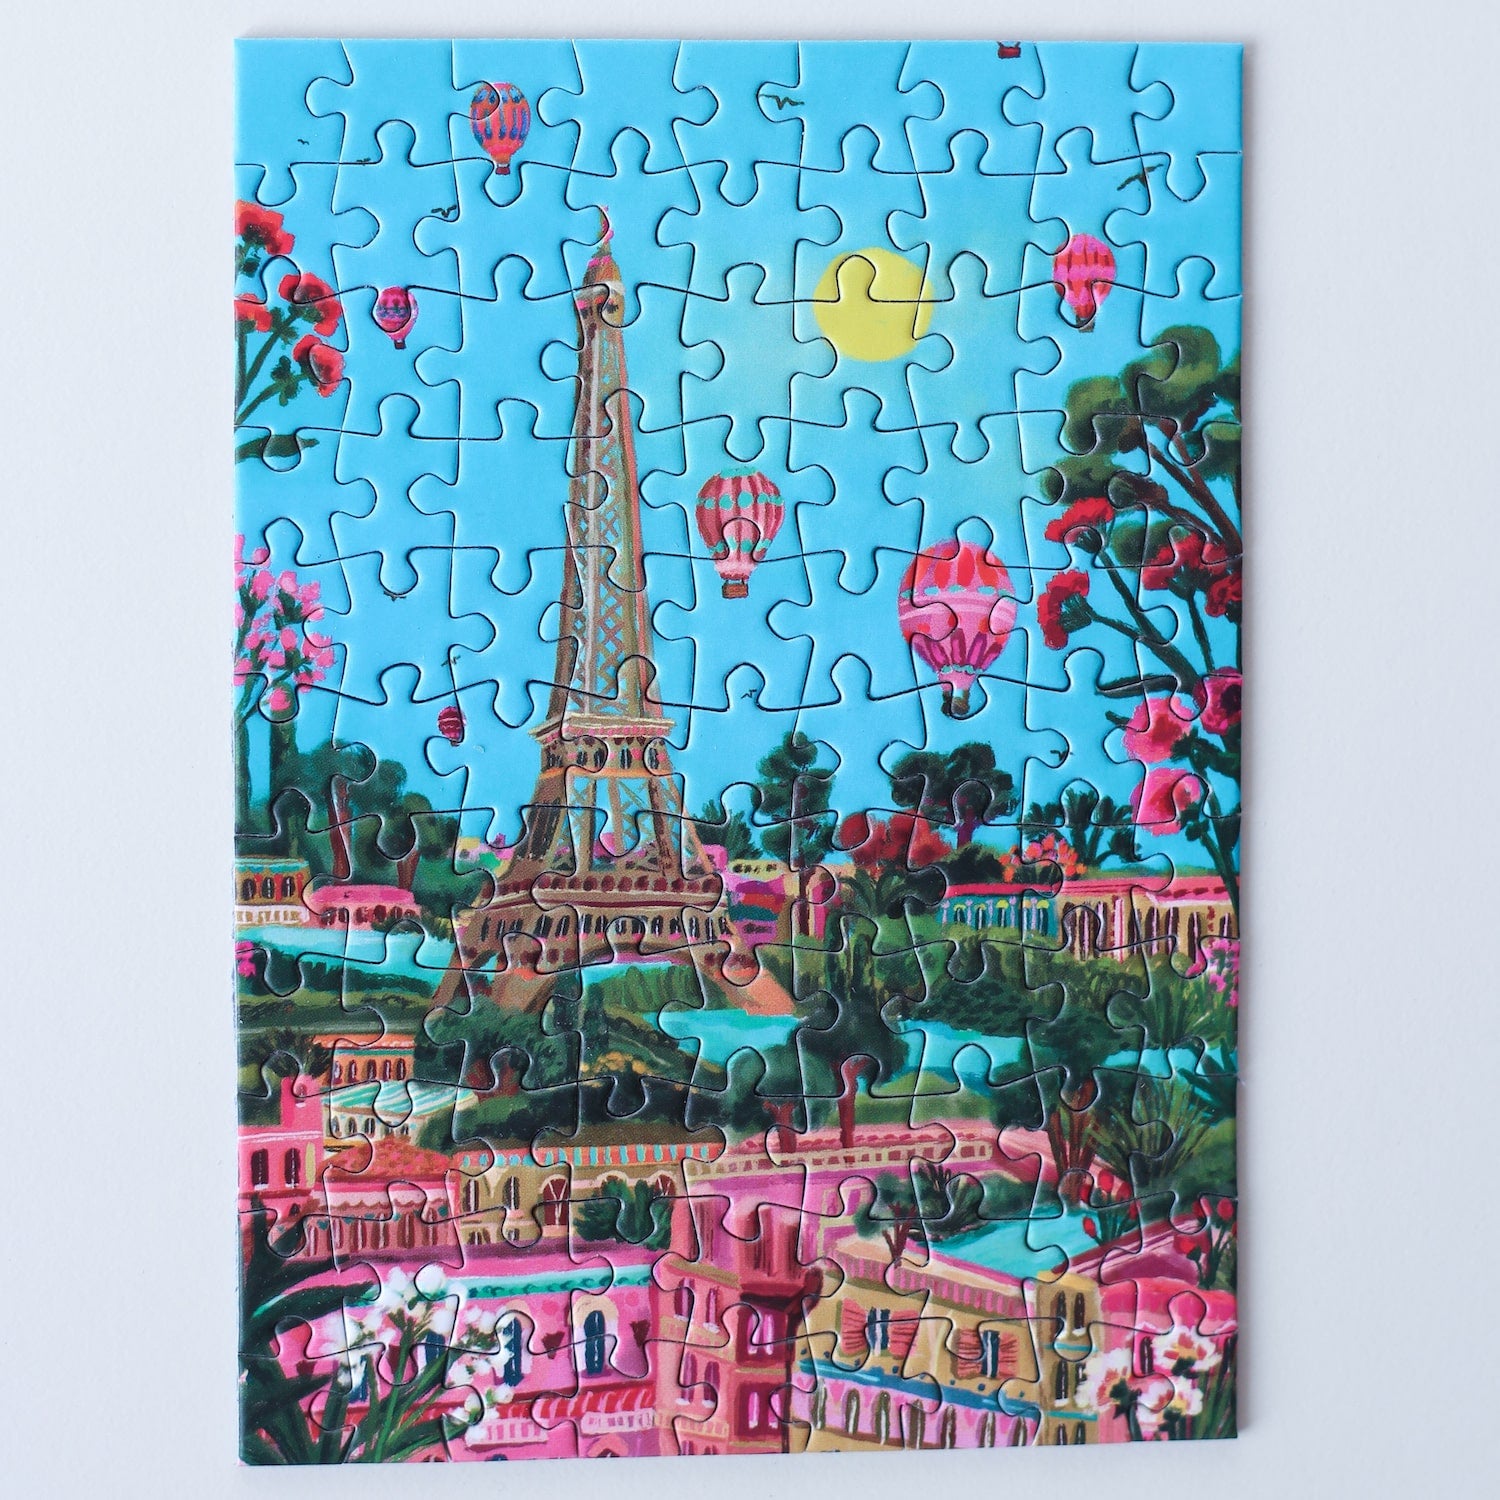 99-teiliges Minipuzzle für Erwachsene, das den Eiffelturm in Paris zeigt. Die Sonne scheint, der Himmel ist blau und ind er Luft befinden sich mehrere Heißluftballons.